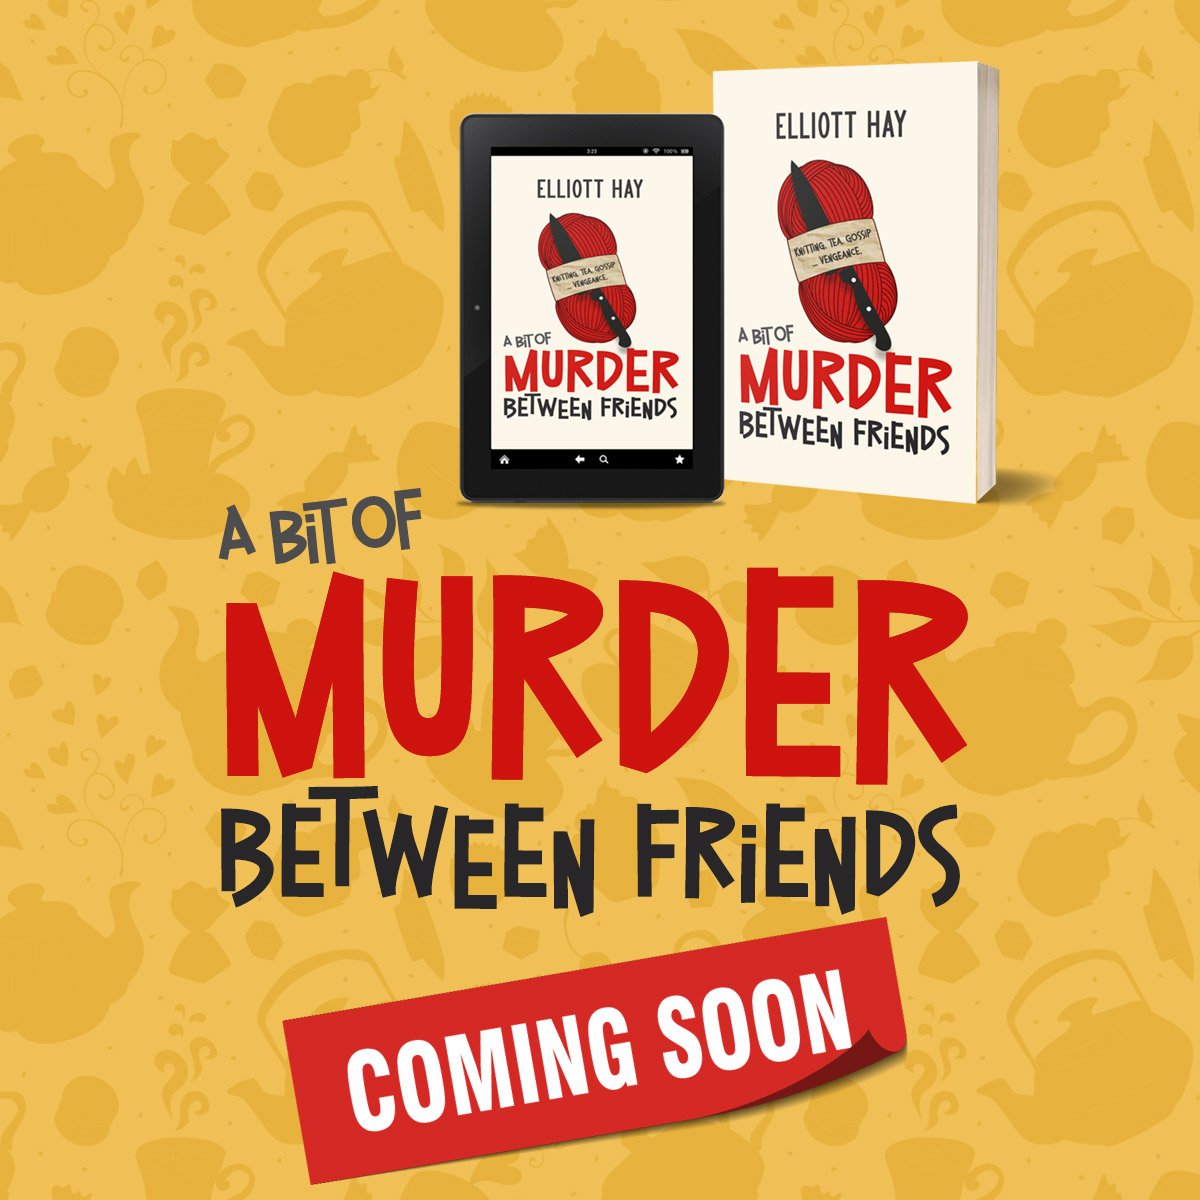 A Bit of Murder Between Friends by Elliott Hay. Coming soon!